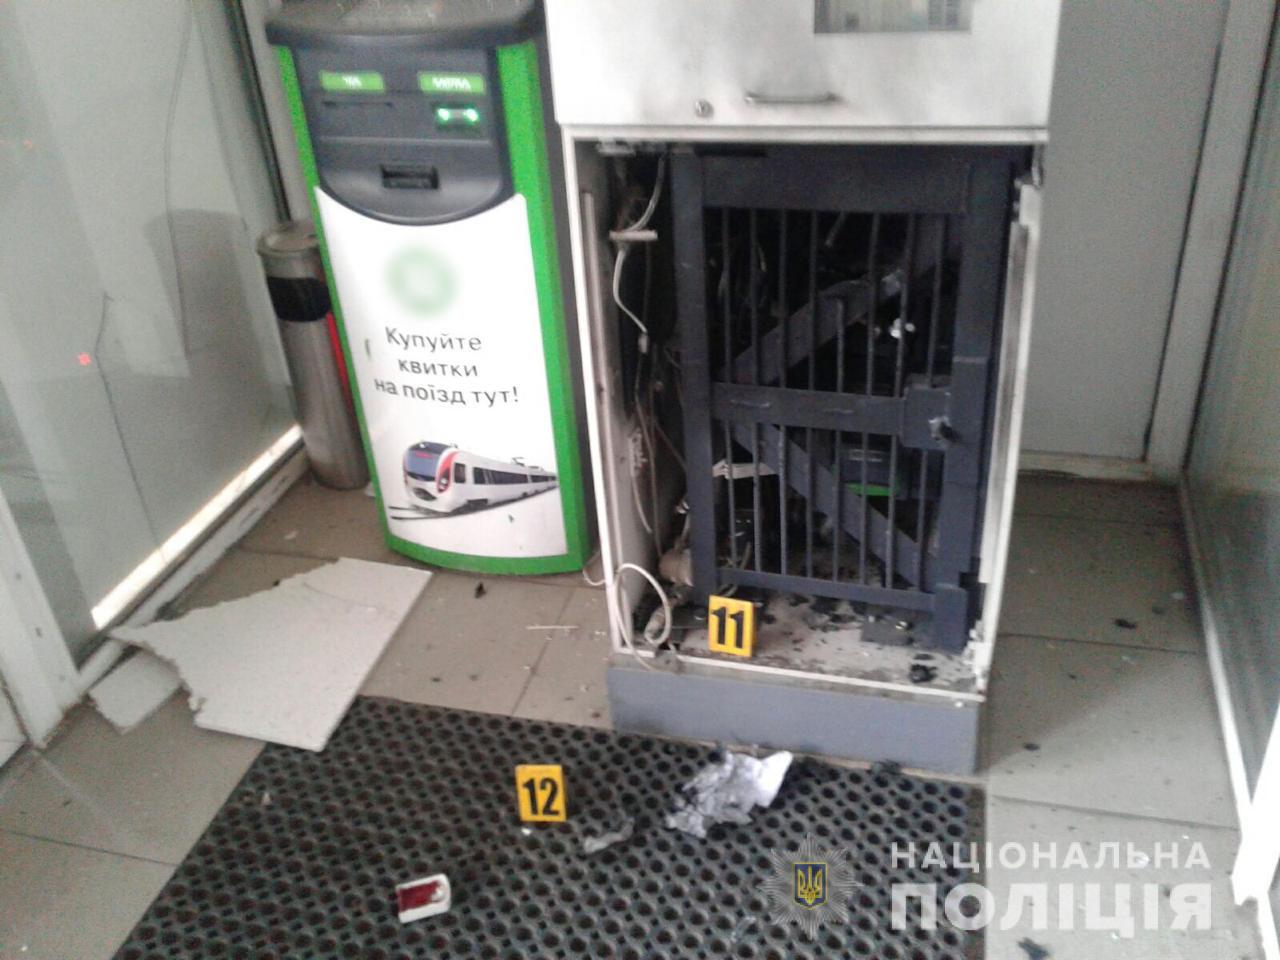 Подрыв банкомата в Харькове: подробности